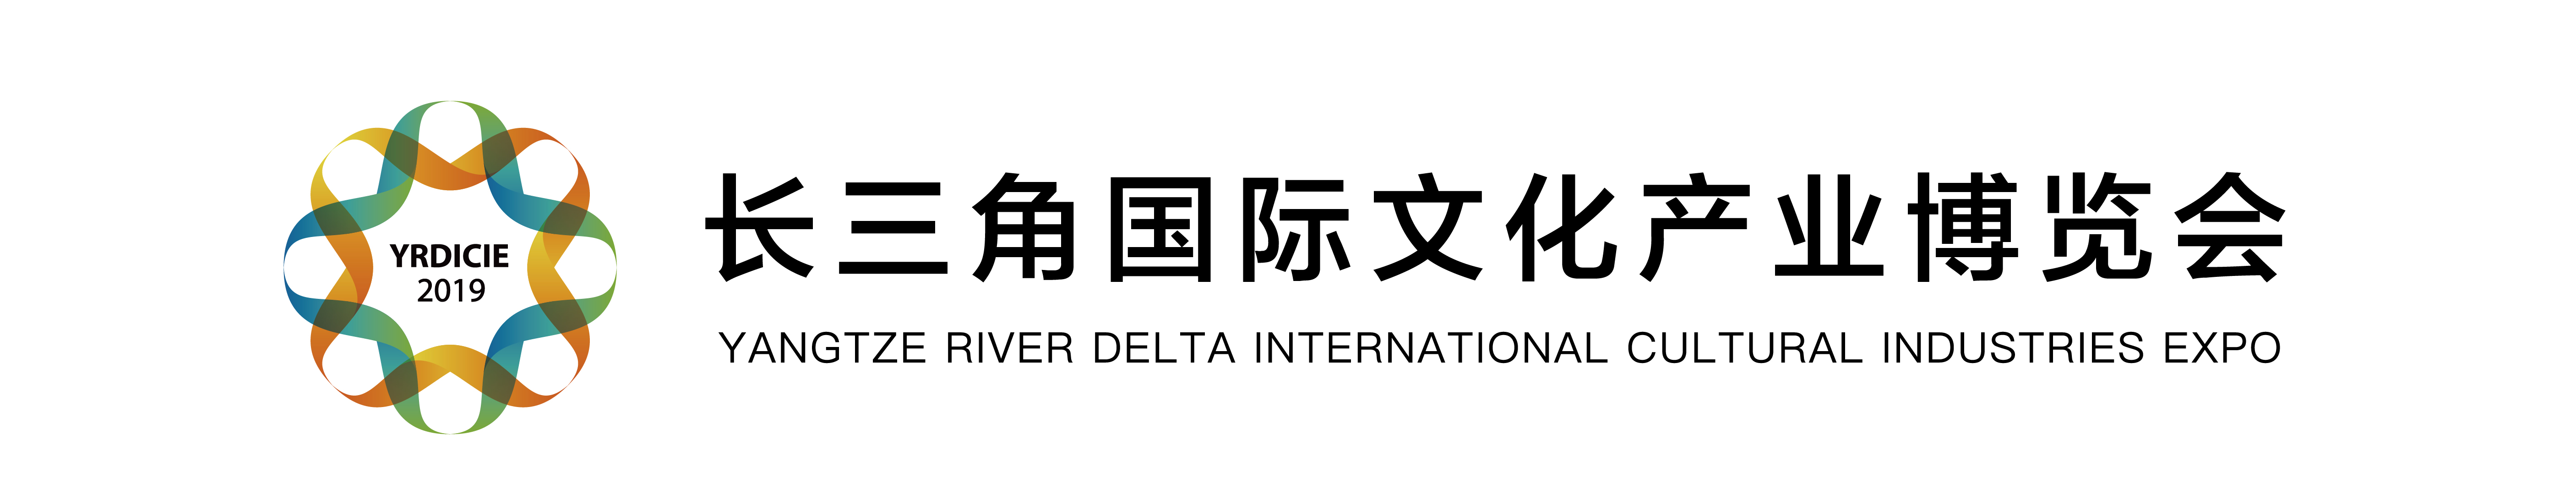 文博会logo (1).jpg